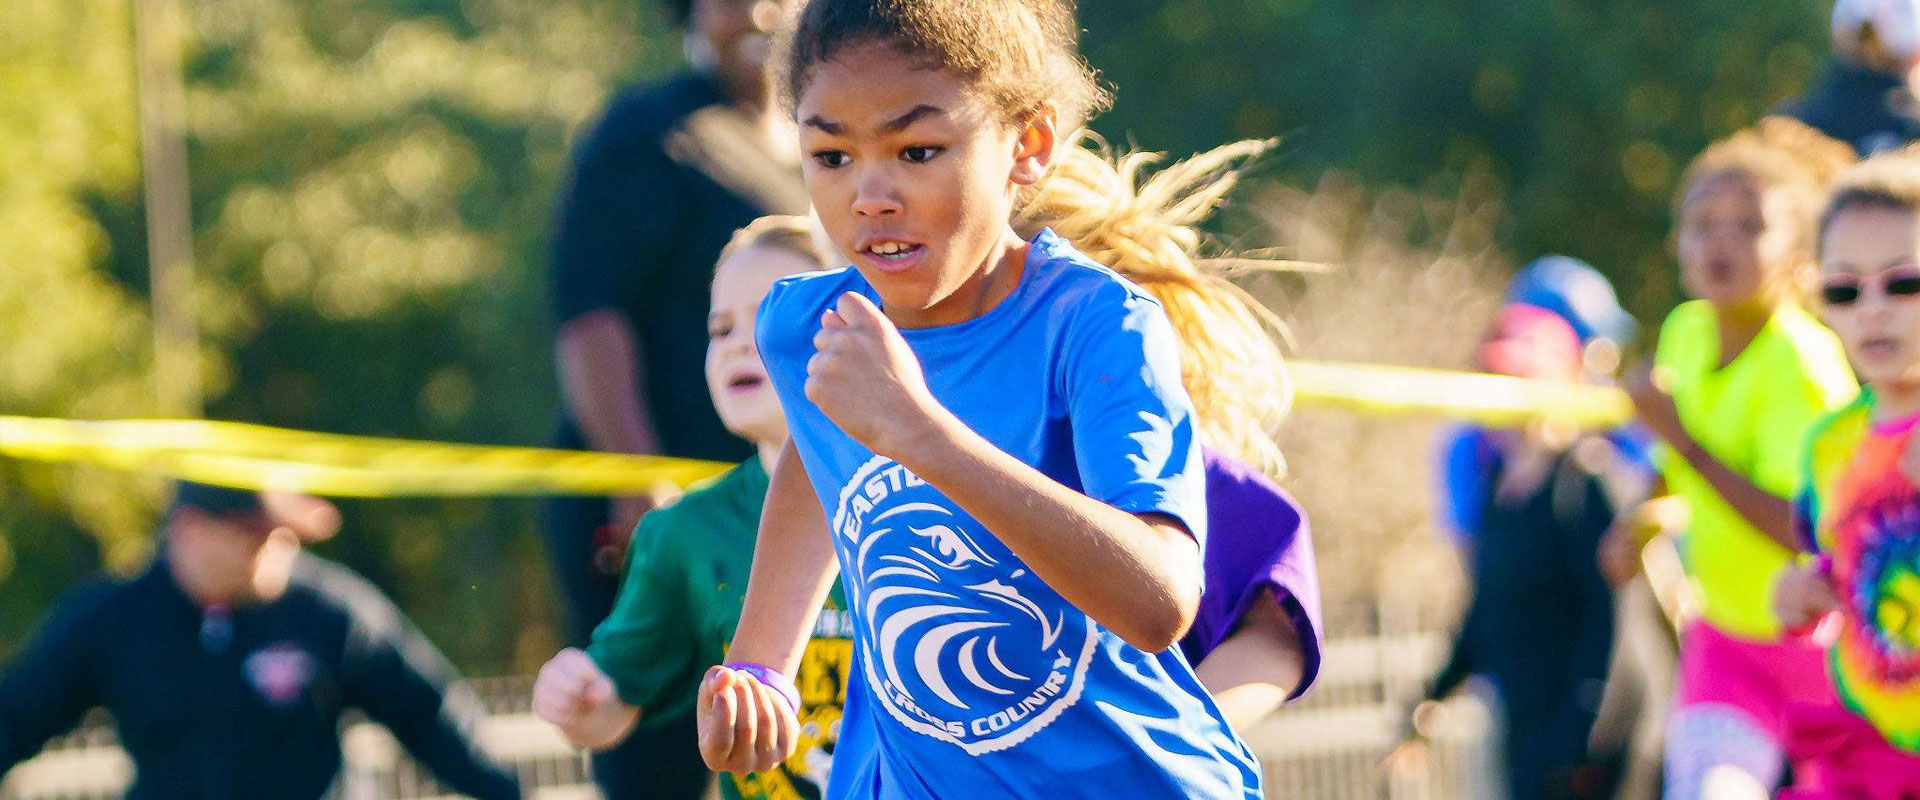 Little girl in a blue shirt running in  a race